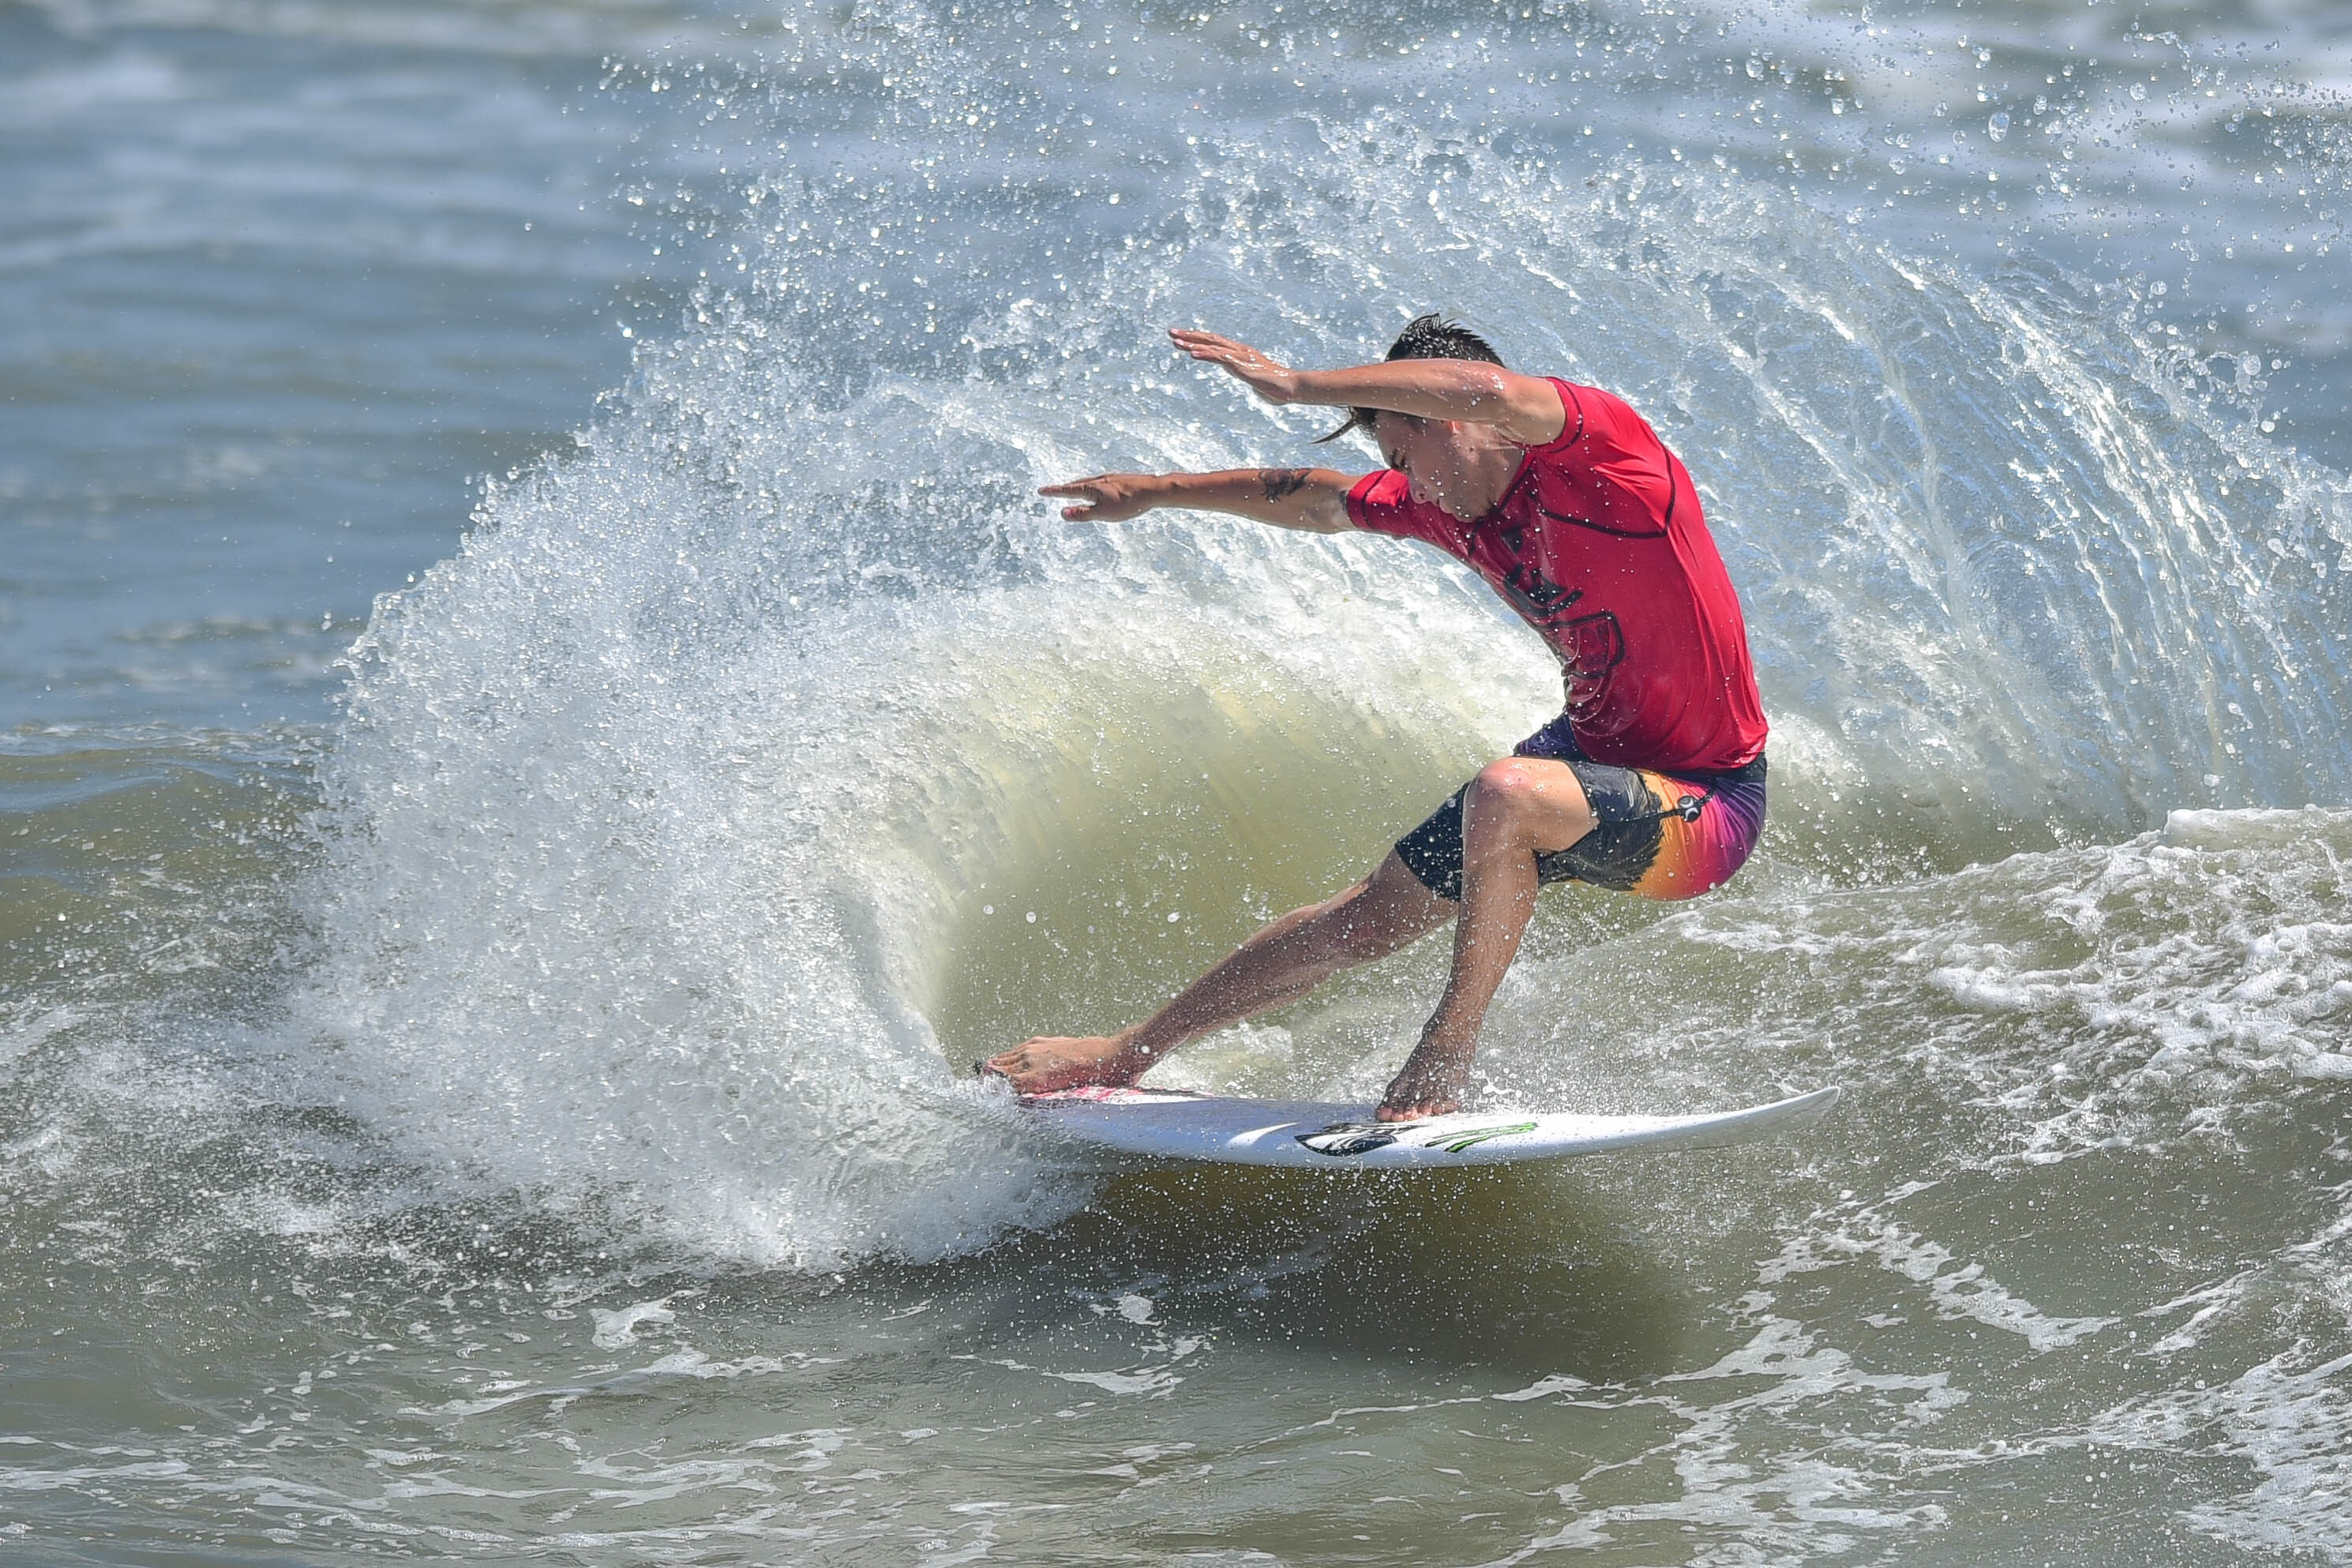 True Grit: Ron Jon Quiksilver Pro | World Surf League